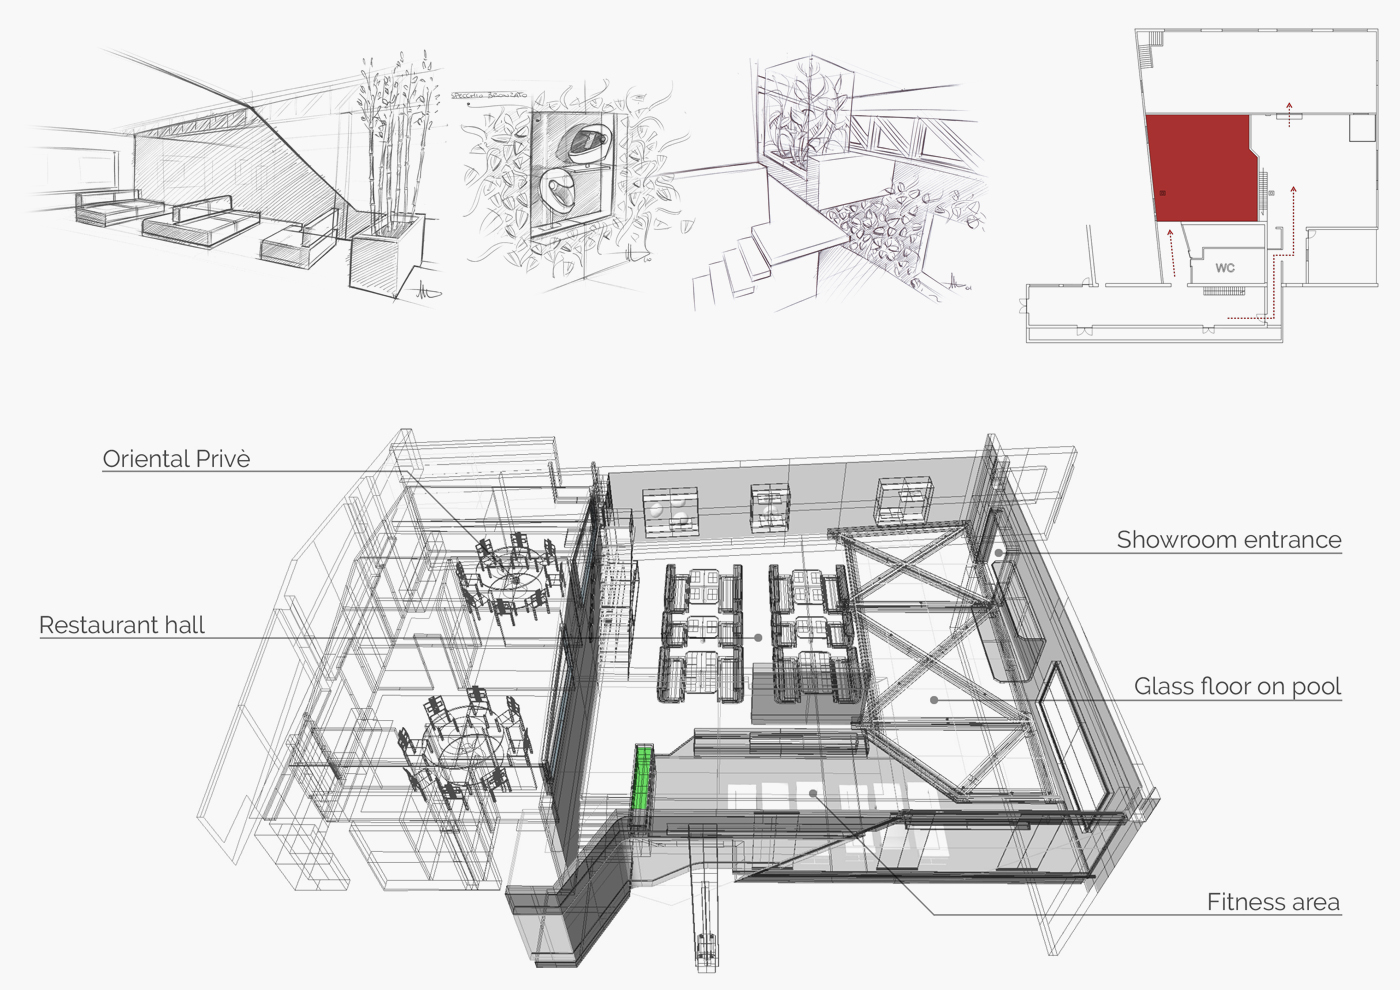 Maggiora automobili - interior design - Industry reassessment - restaurant hall1a - Davide Mezzasalma - Furniture design - Berlin